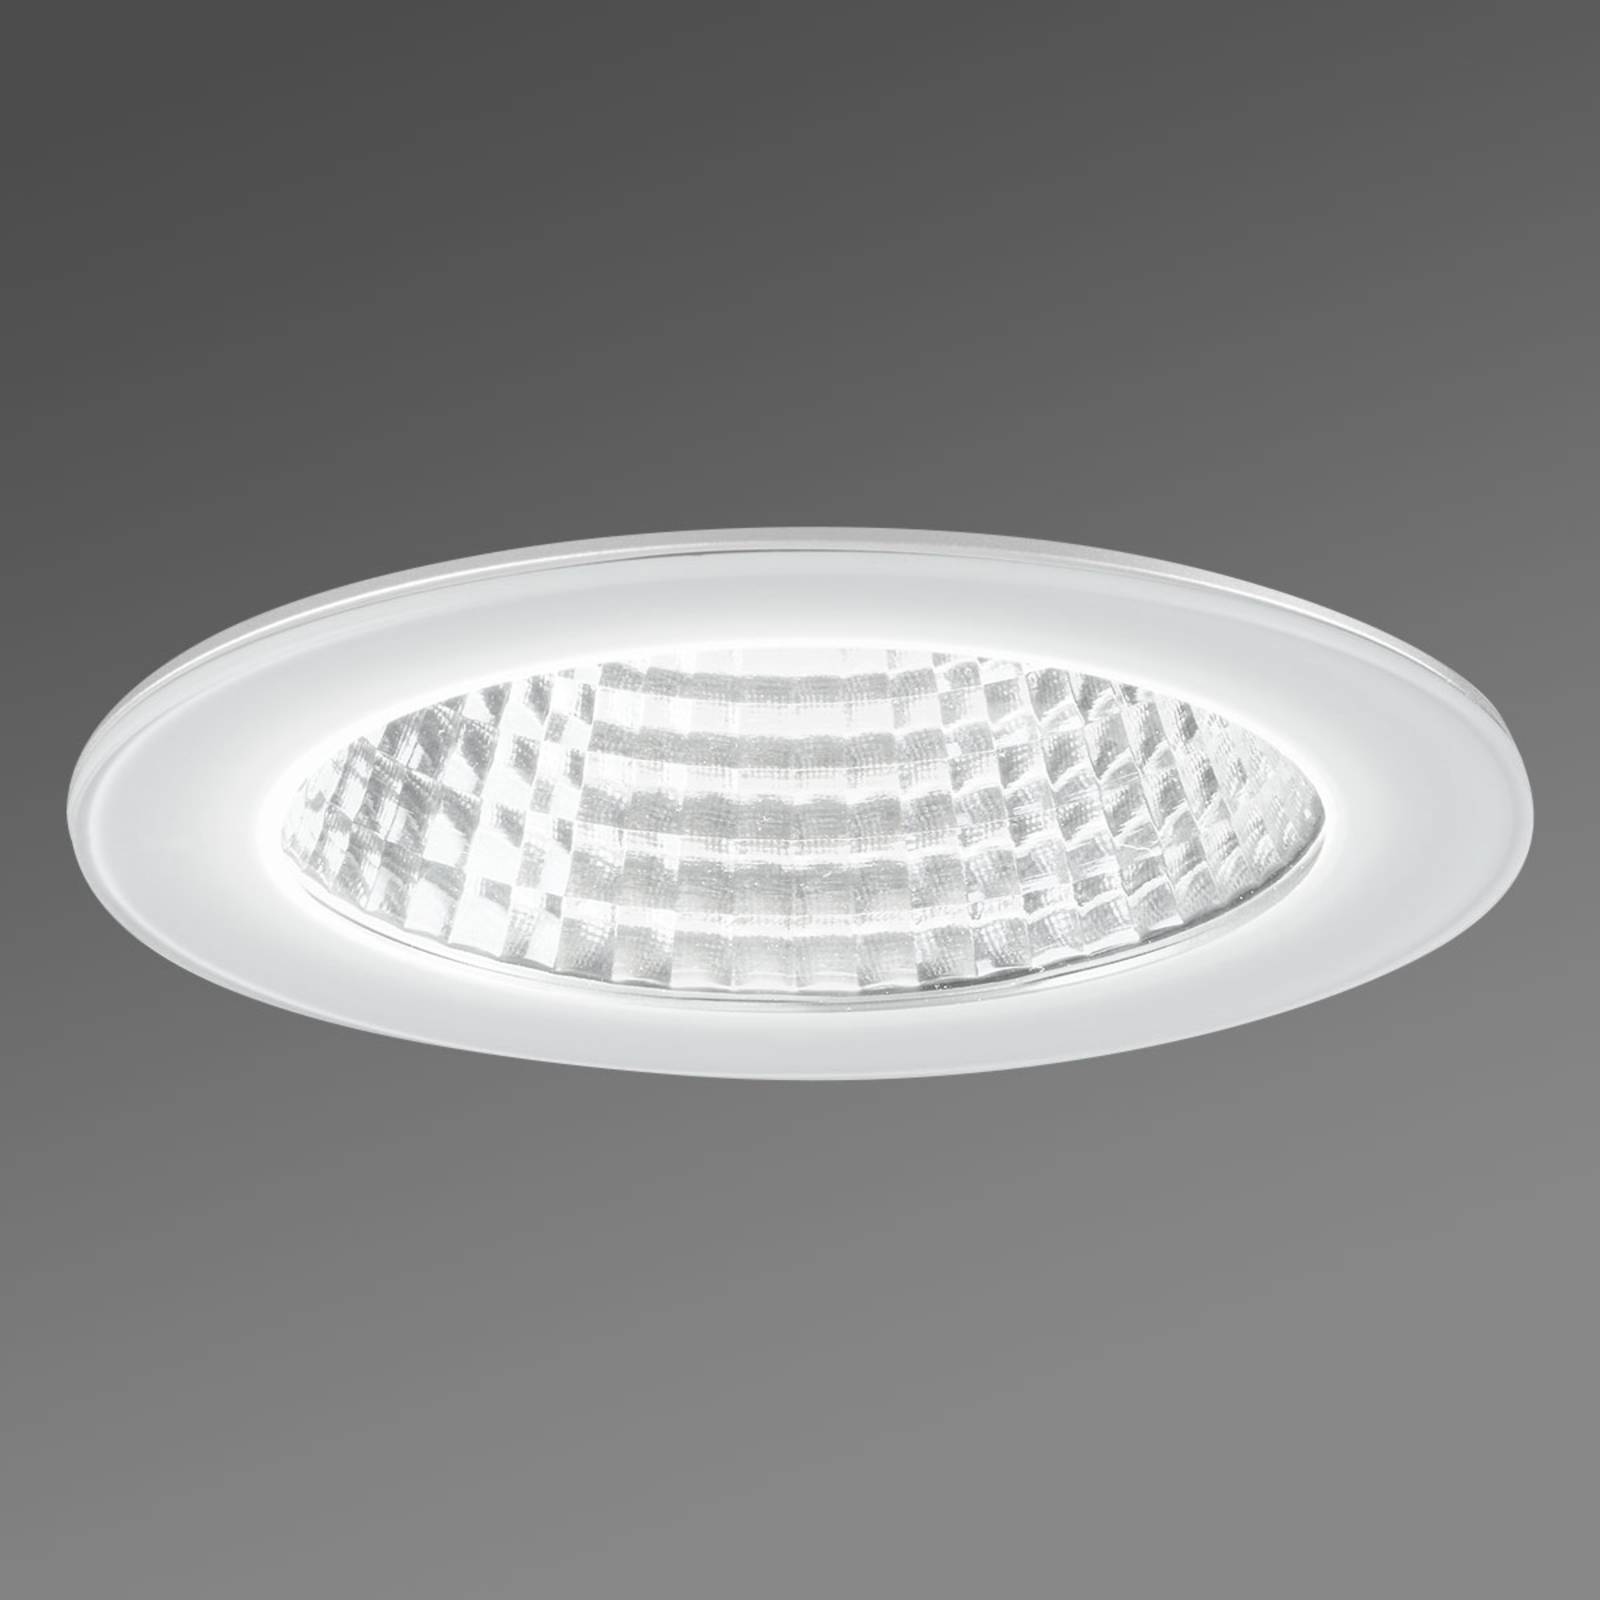 Spritzwassergeschützte LED-Einbauleuchte IDown 26 von Egger Licht